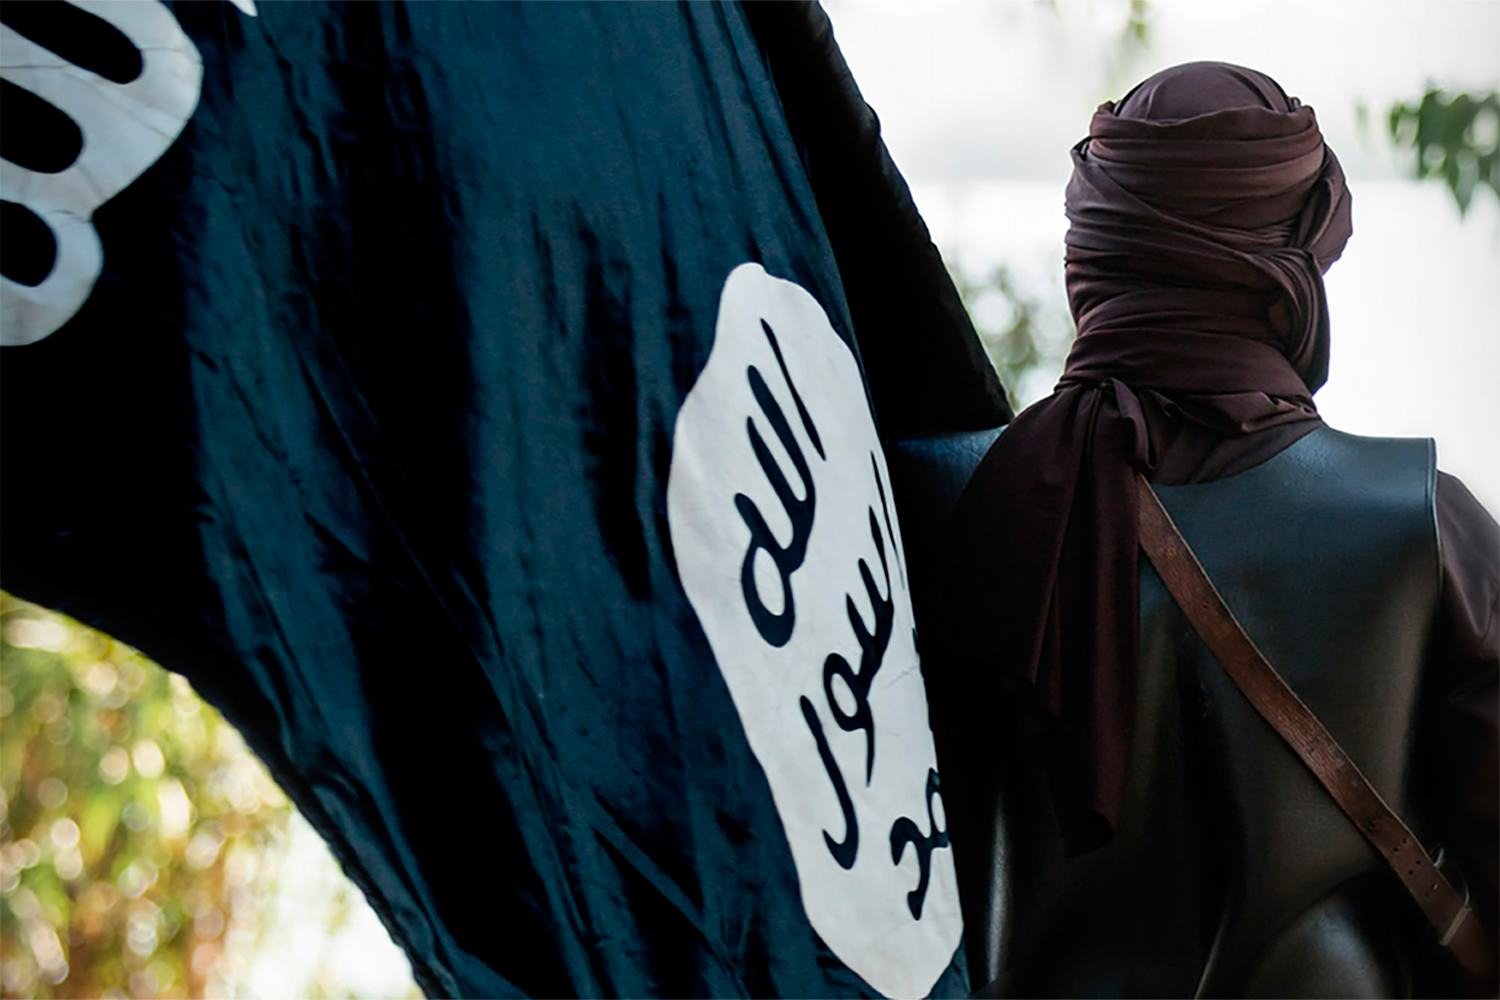 La revista del Estado Islámico saca "a la venta" a dos hombres secuestrados. #7dias